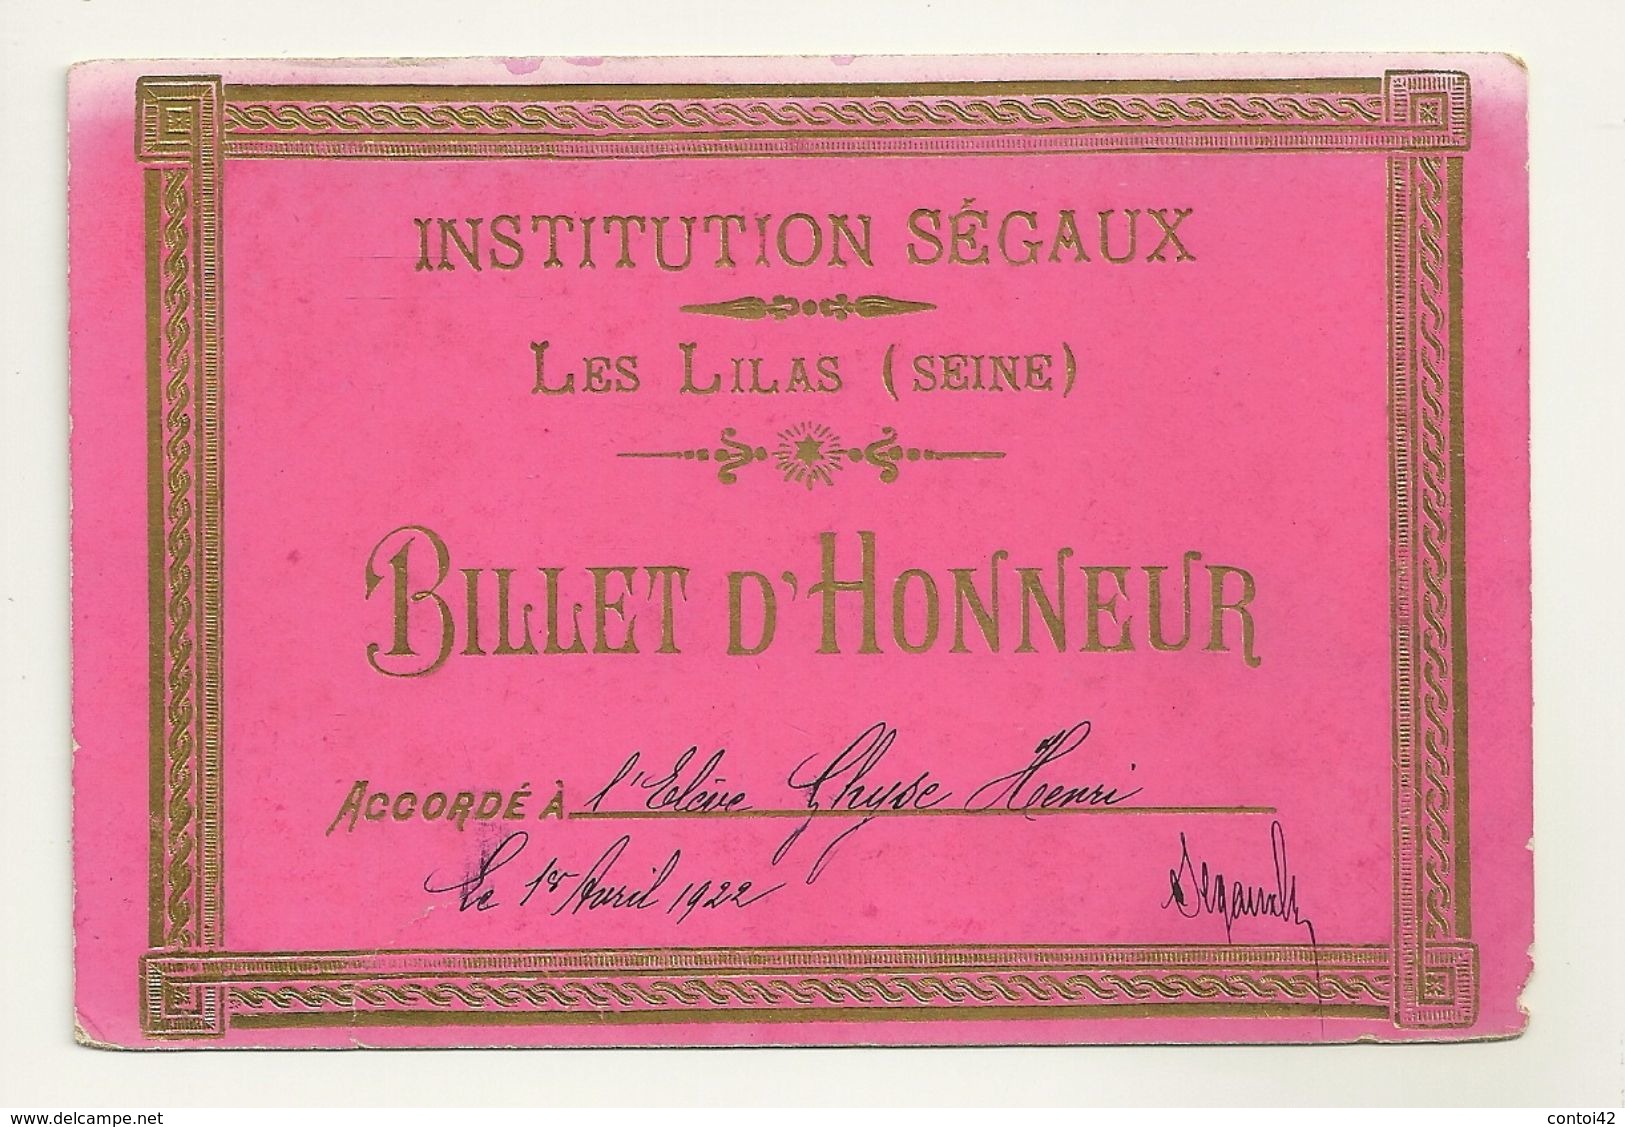 93 LES LILAS INSTITUTION SEGAUX BILLET D' HONNEUR AVRIL 1922 SEINE SAINT DENIS - Collections